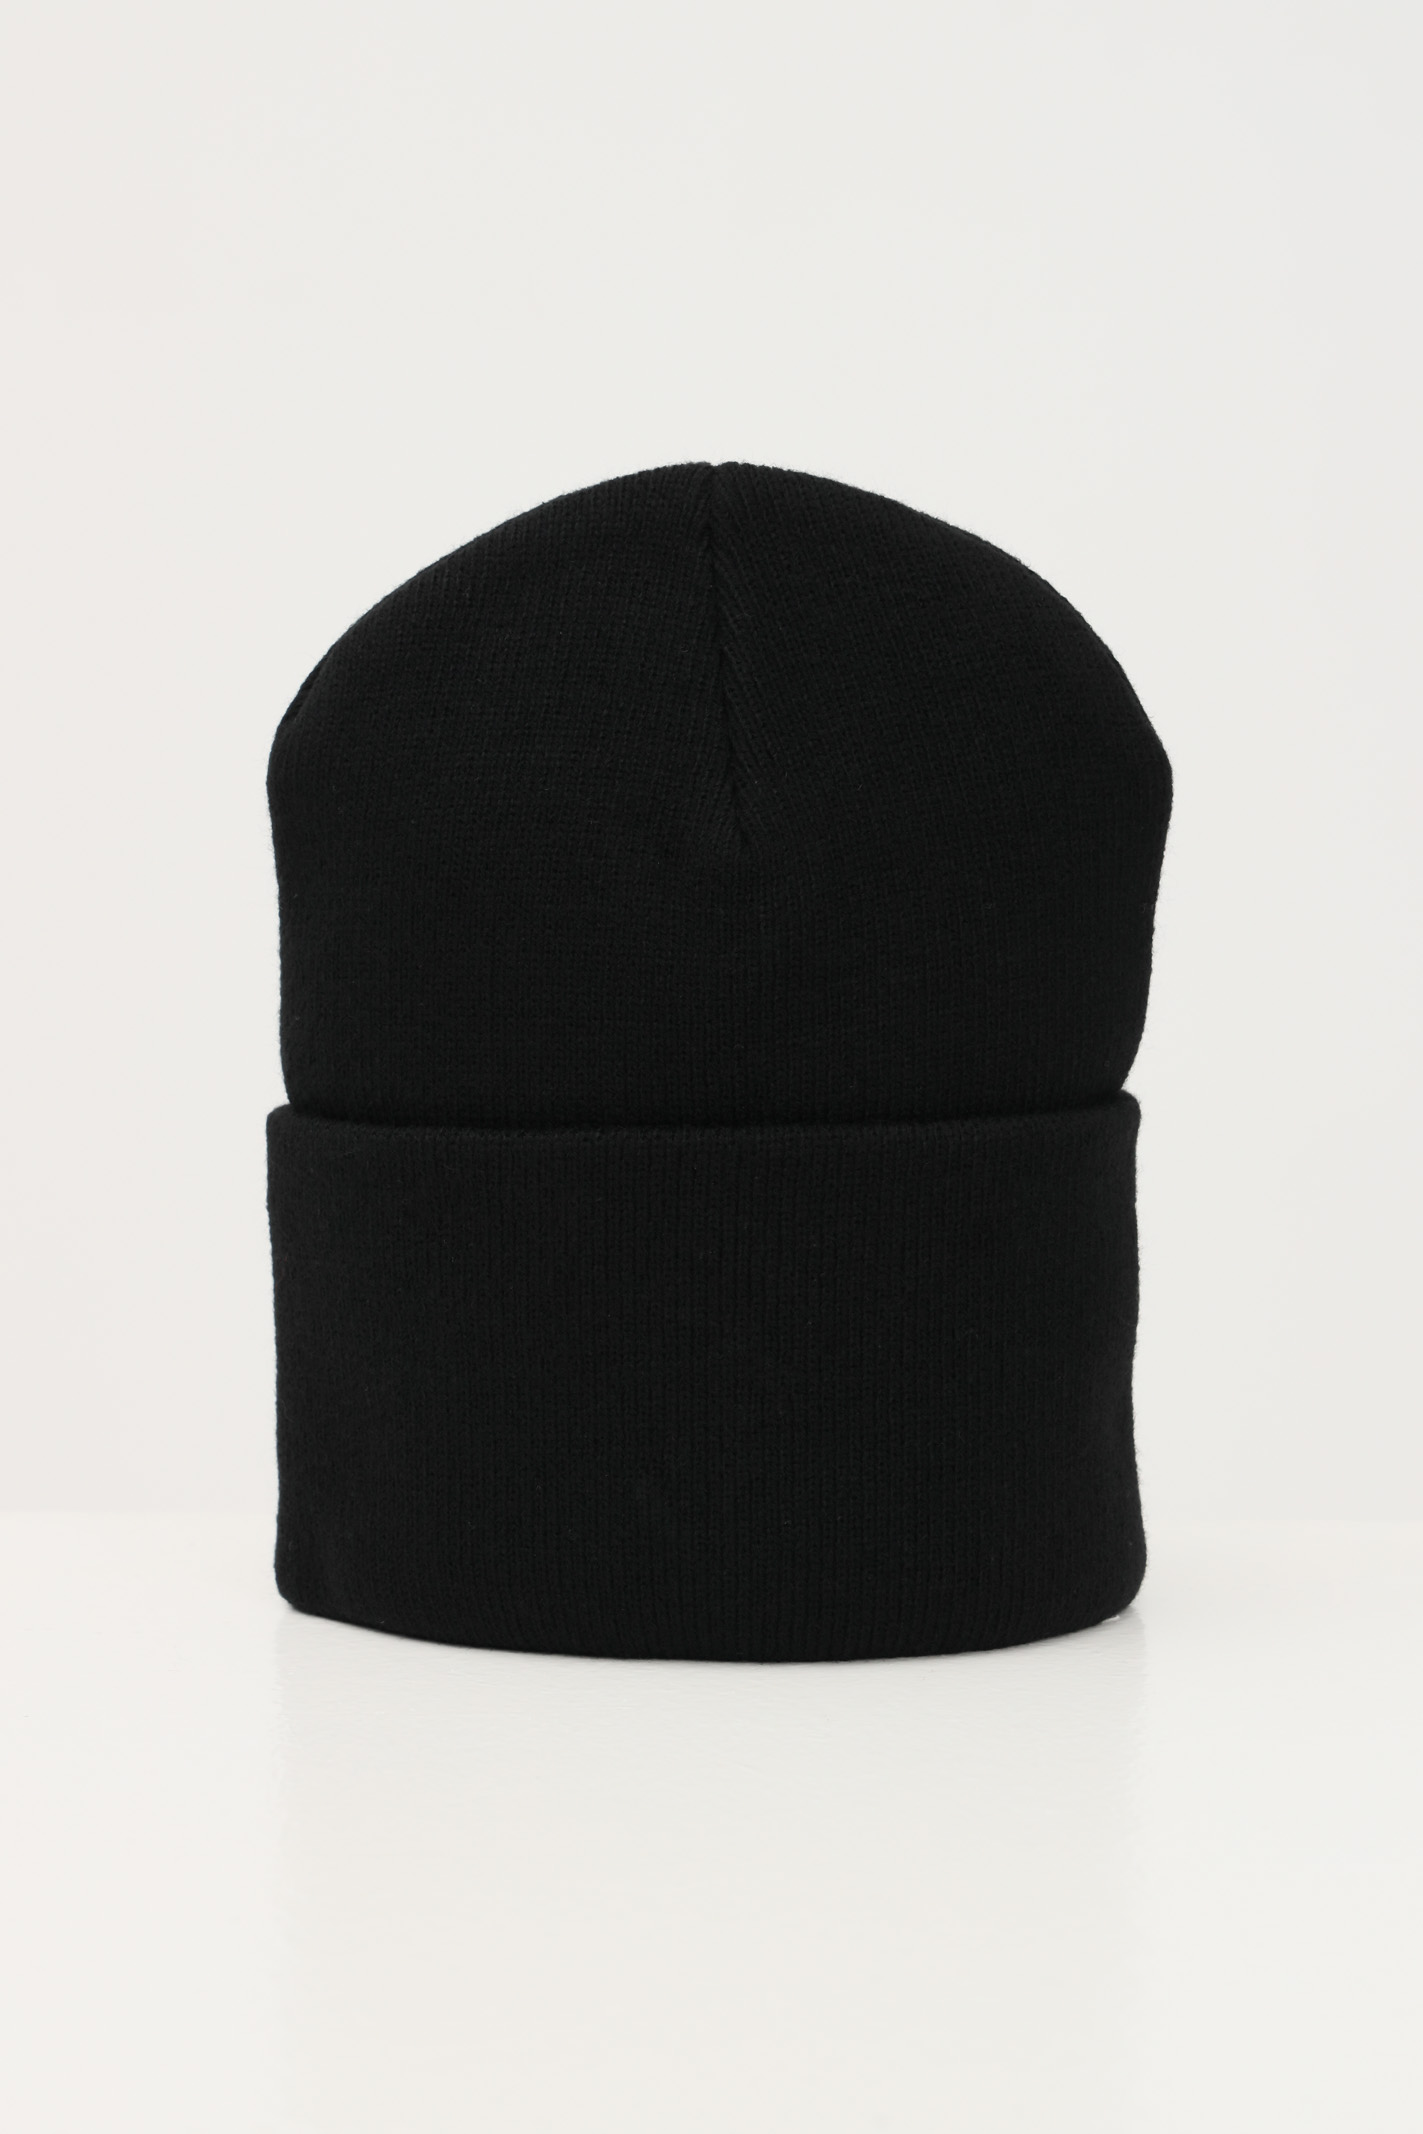 Cappello lana nero da uomo e donna con patch con logo - CARHARTT